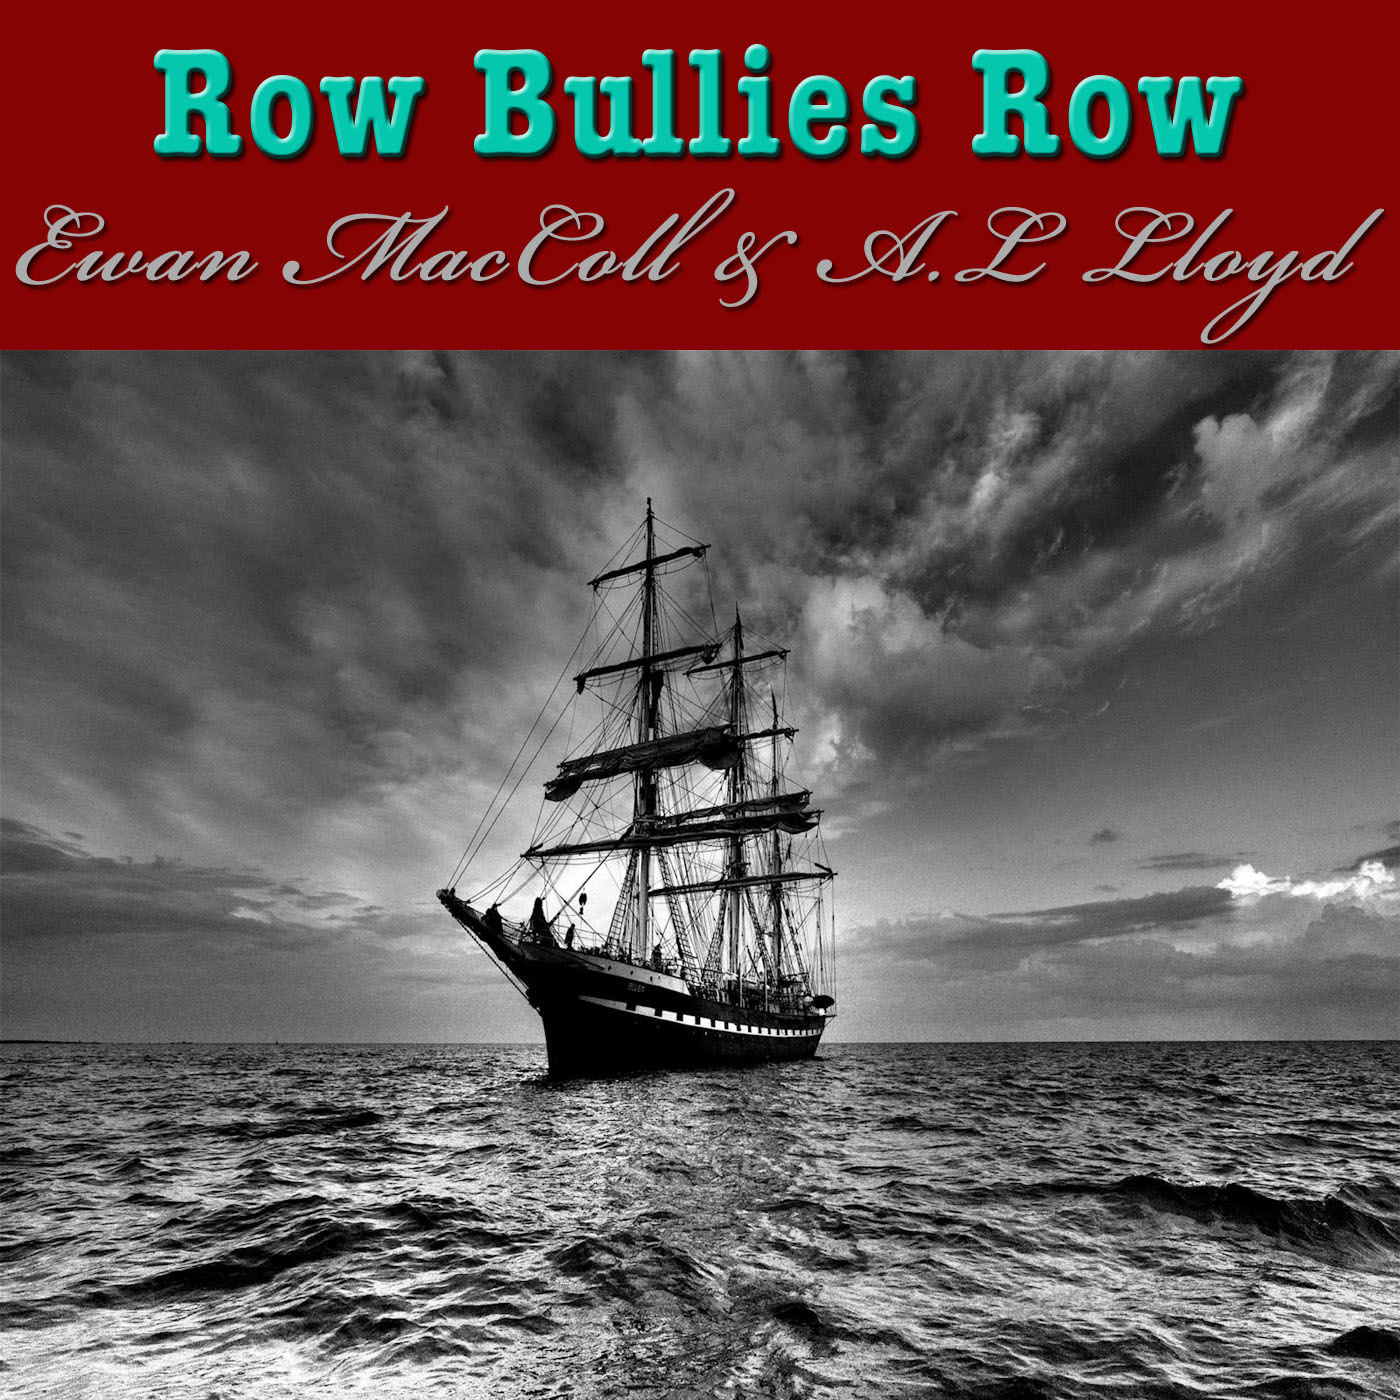 Row Bullies Row